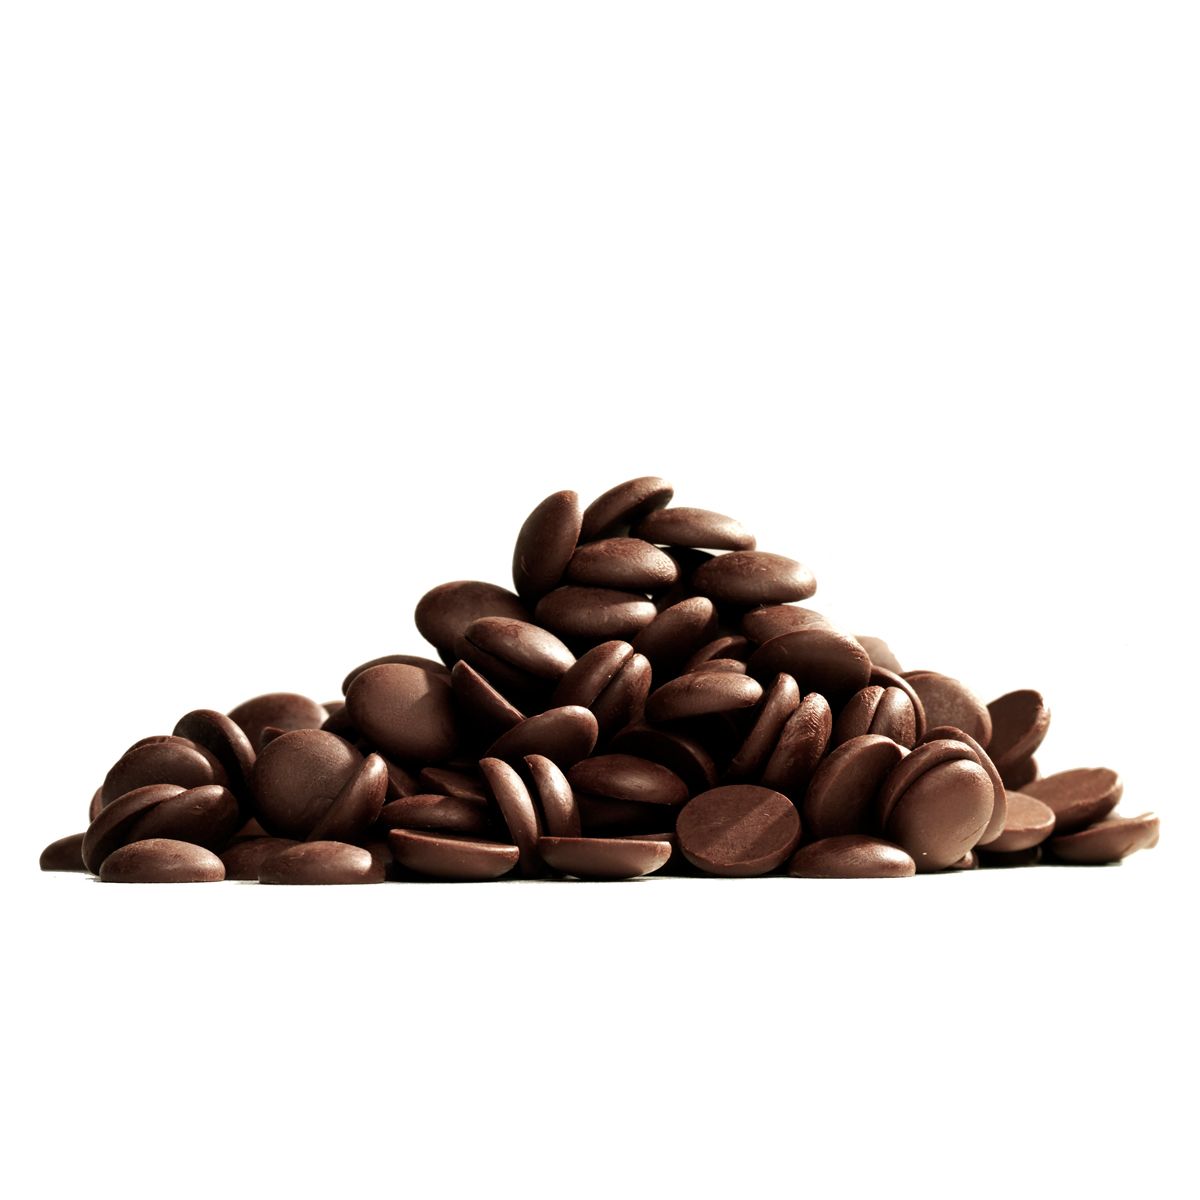 Horká čokoláda 54,5 % (811), 400g, Callebaut Chocolate Dark Callets